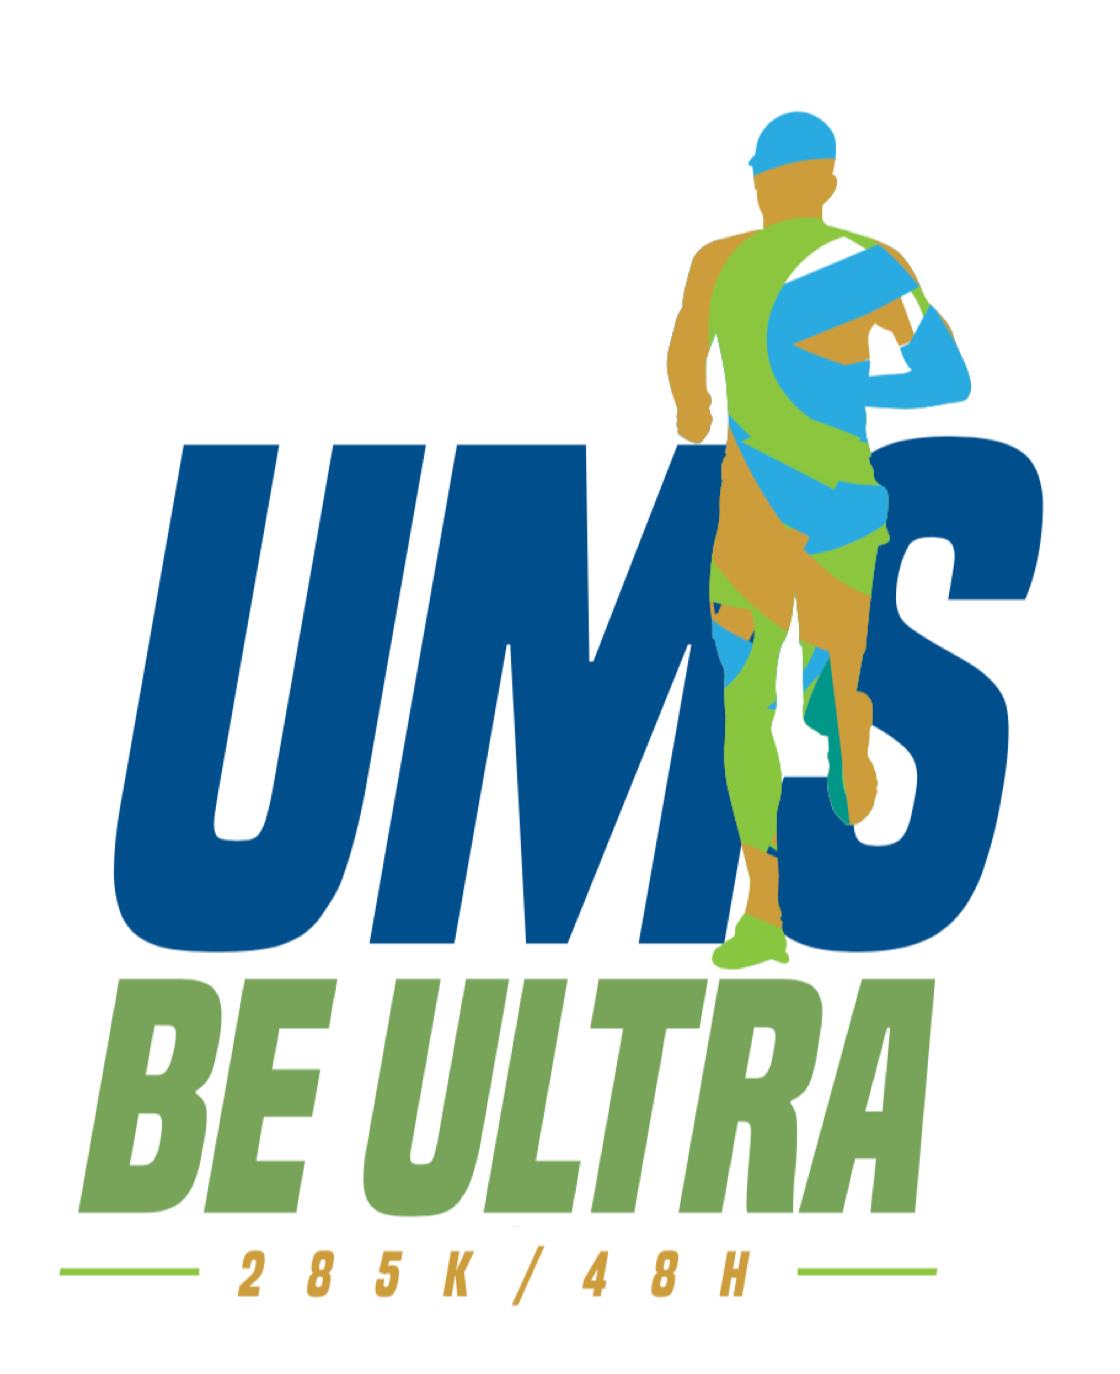 UltraMilano – Sanremo logo on RaceRaves